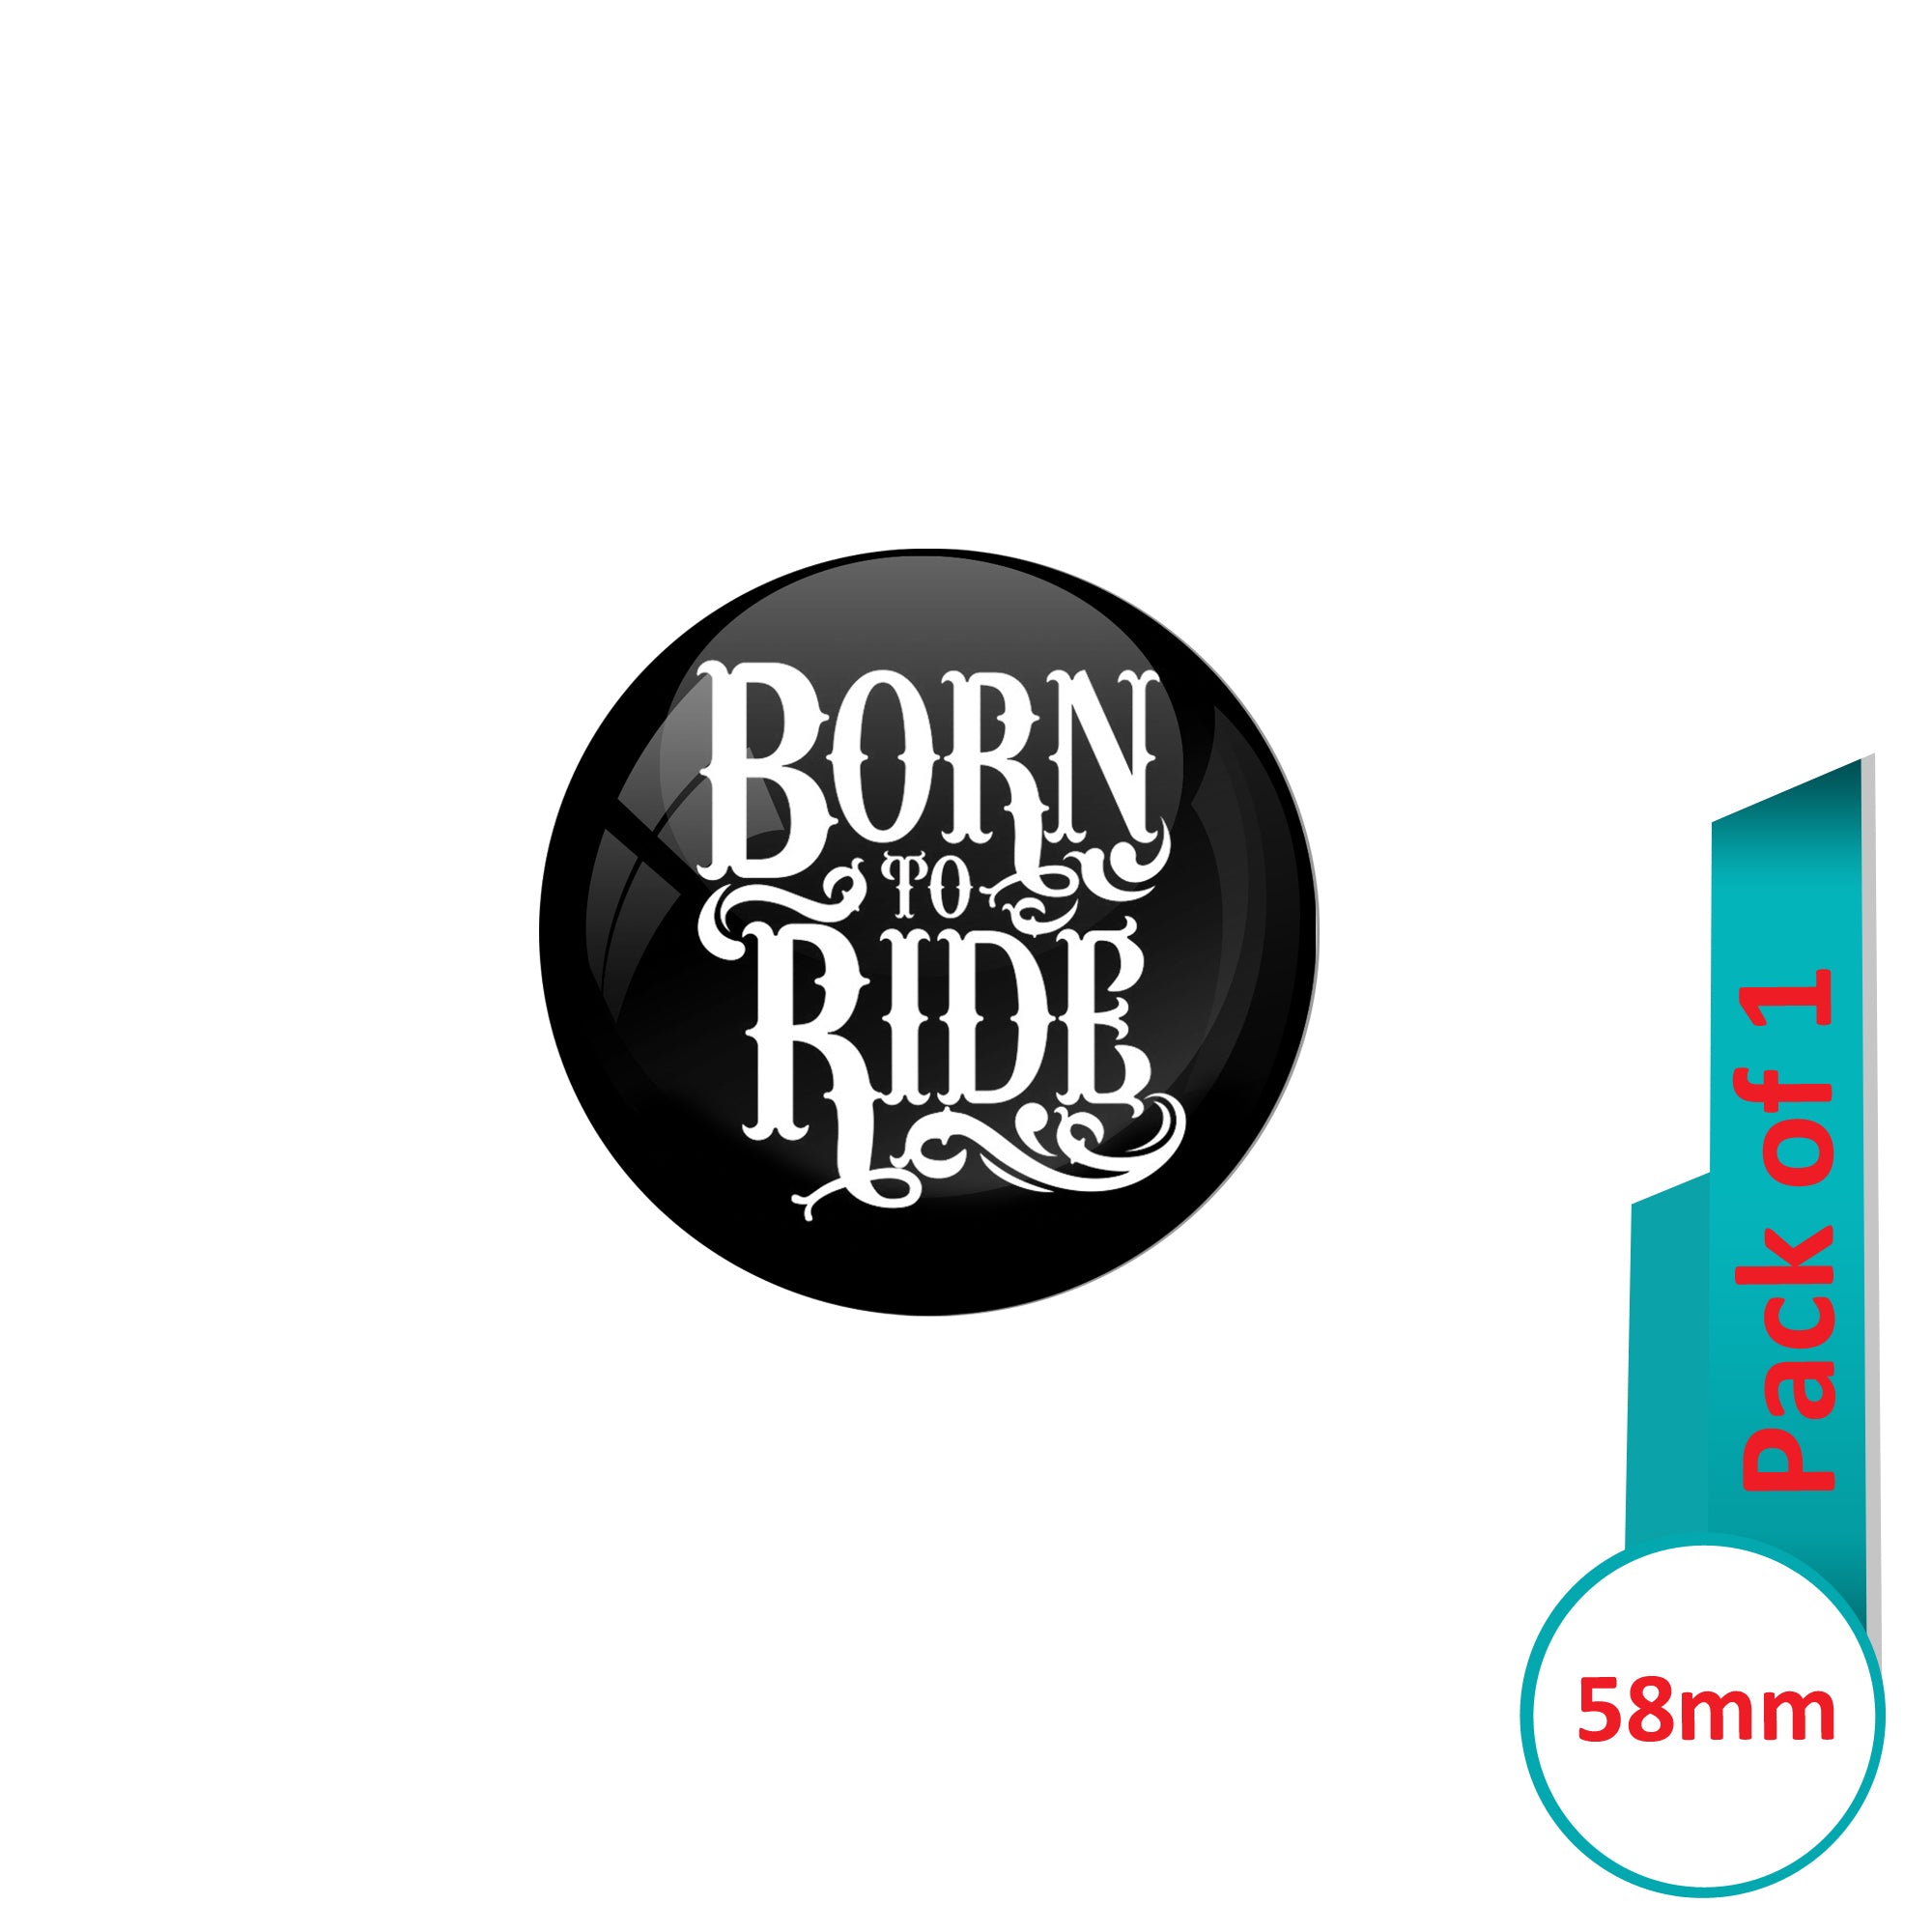 Born To Ride Art for Sale - Fine Art America